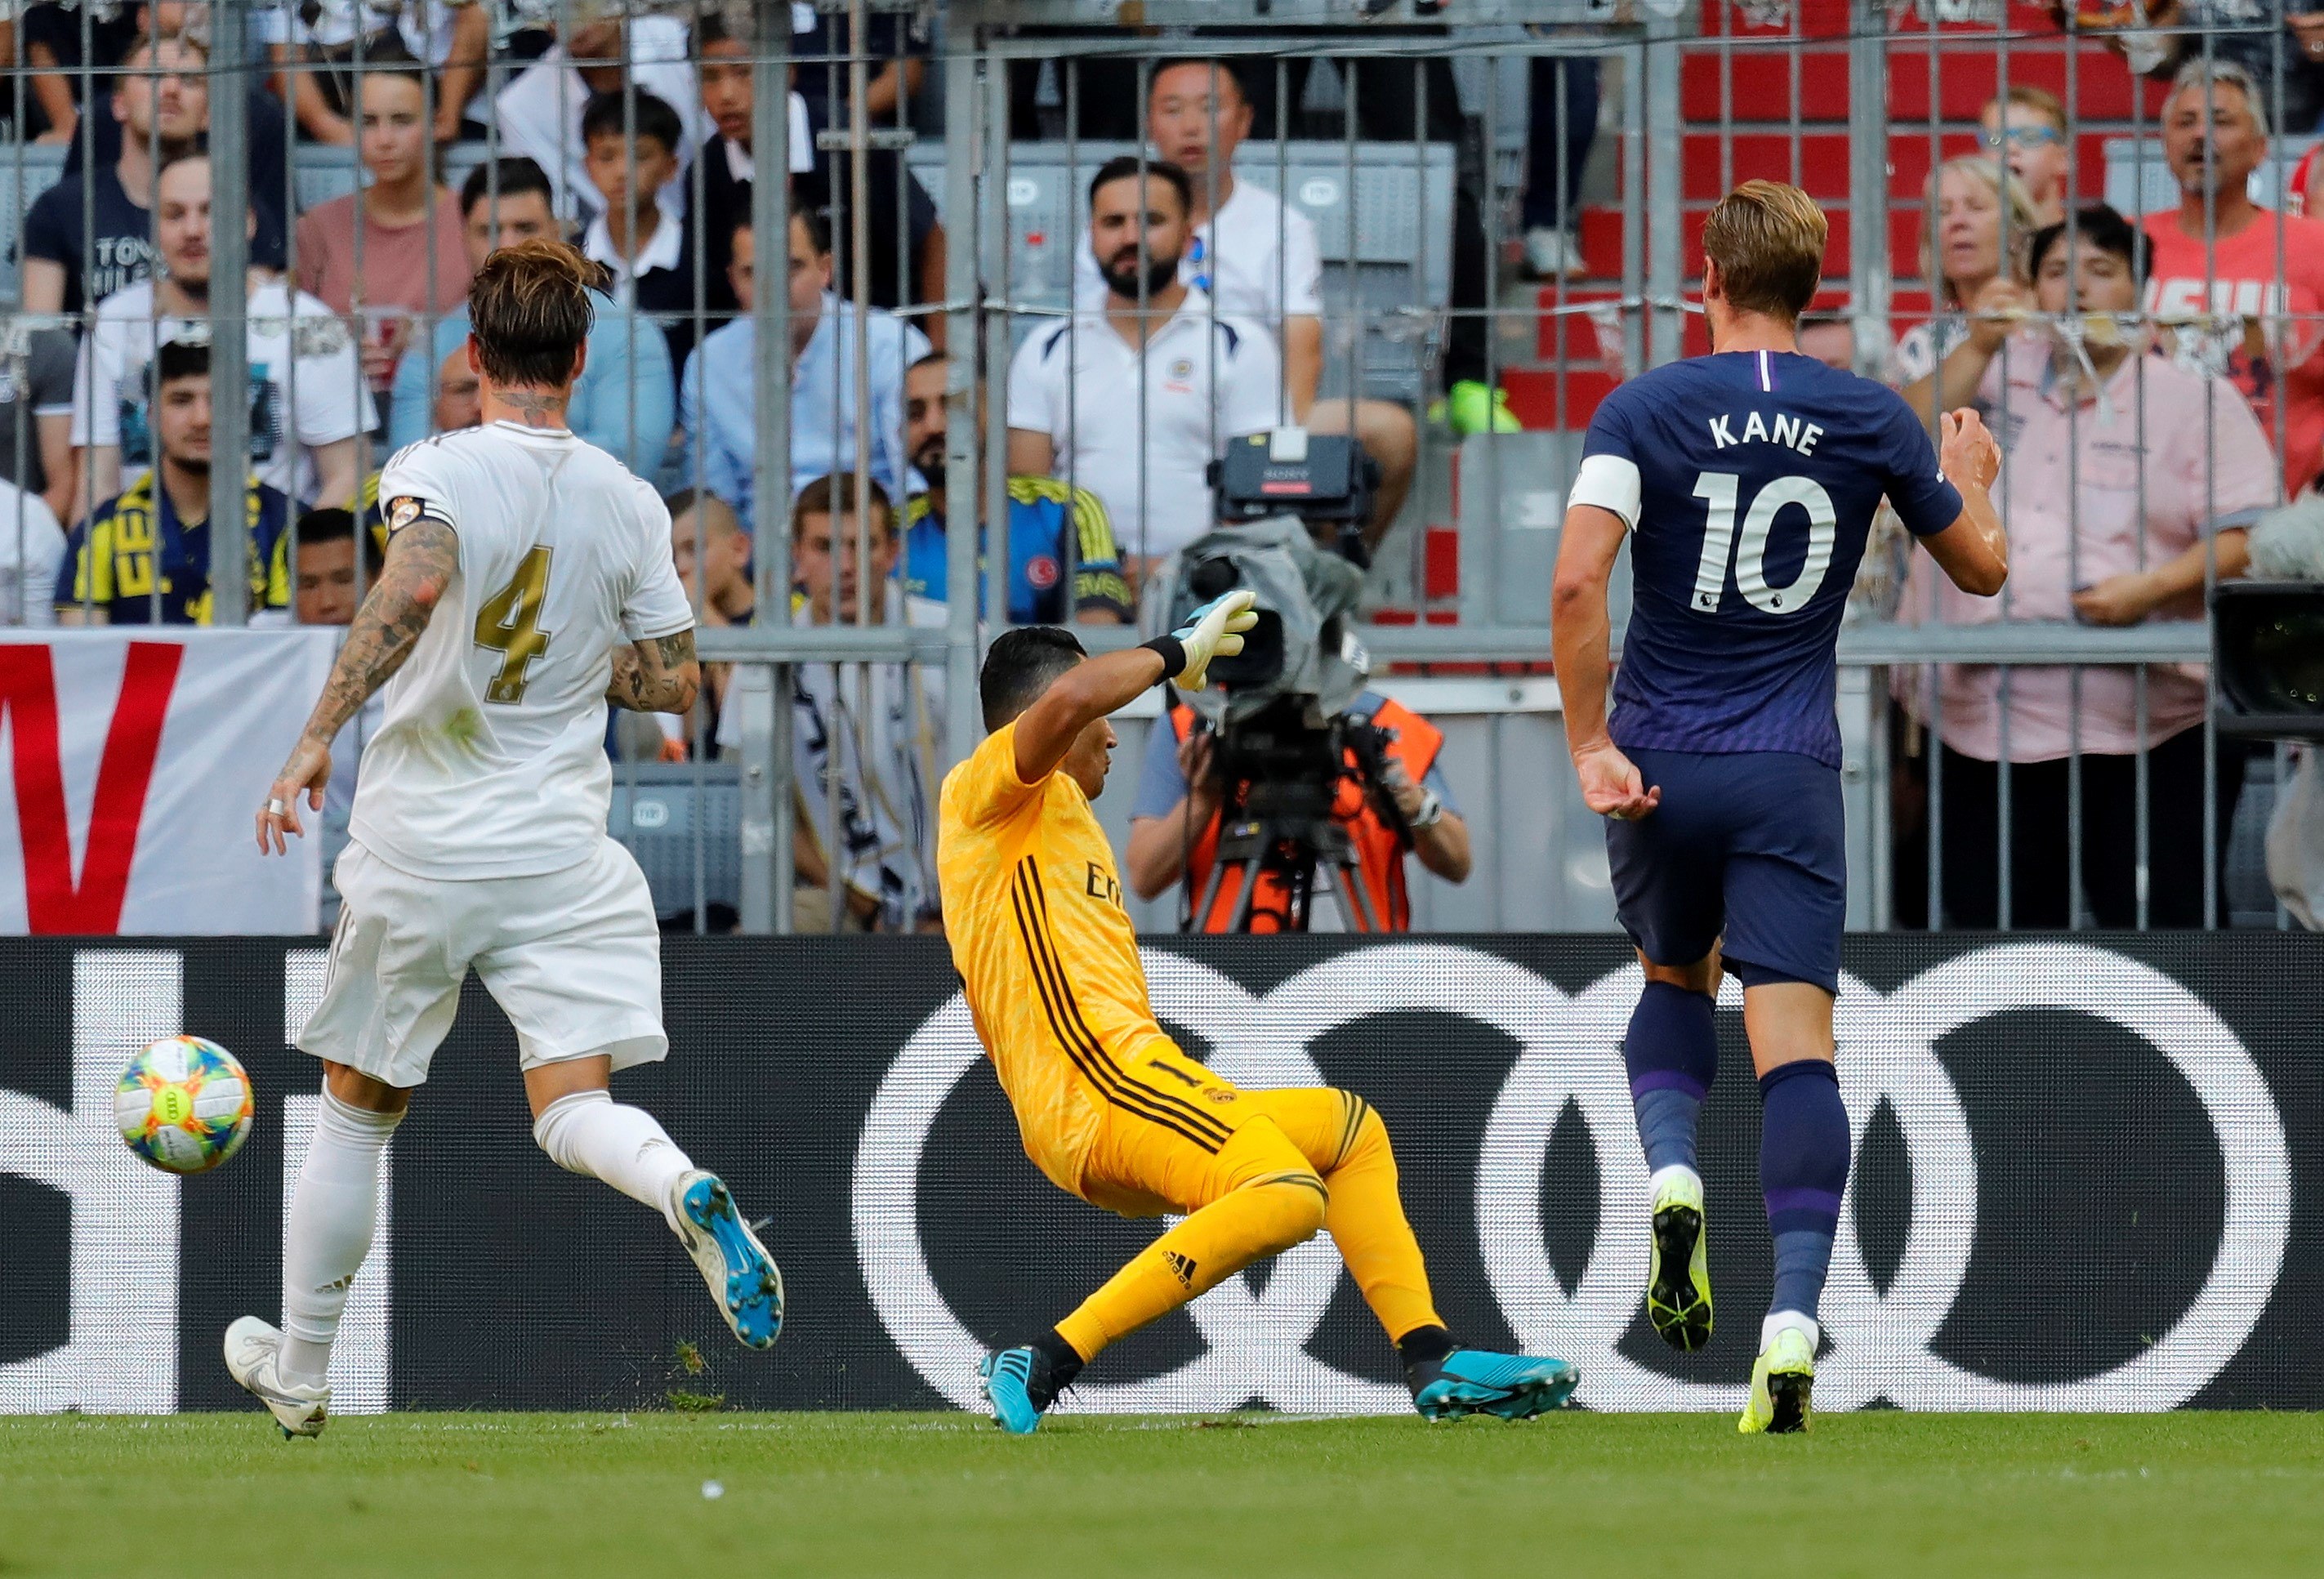 Harry Kane anota el gol del triunfo del Tottenham frente al Real Madrid. (Foto Prensa Libre: EFE)